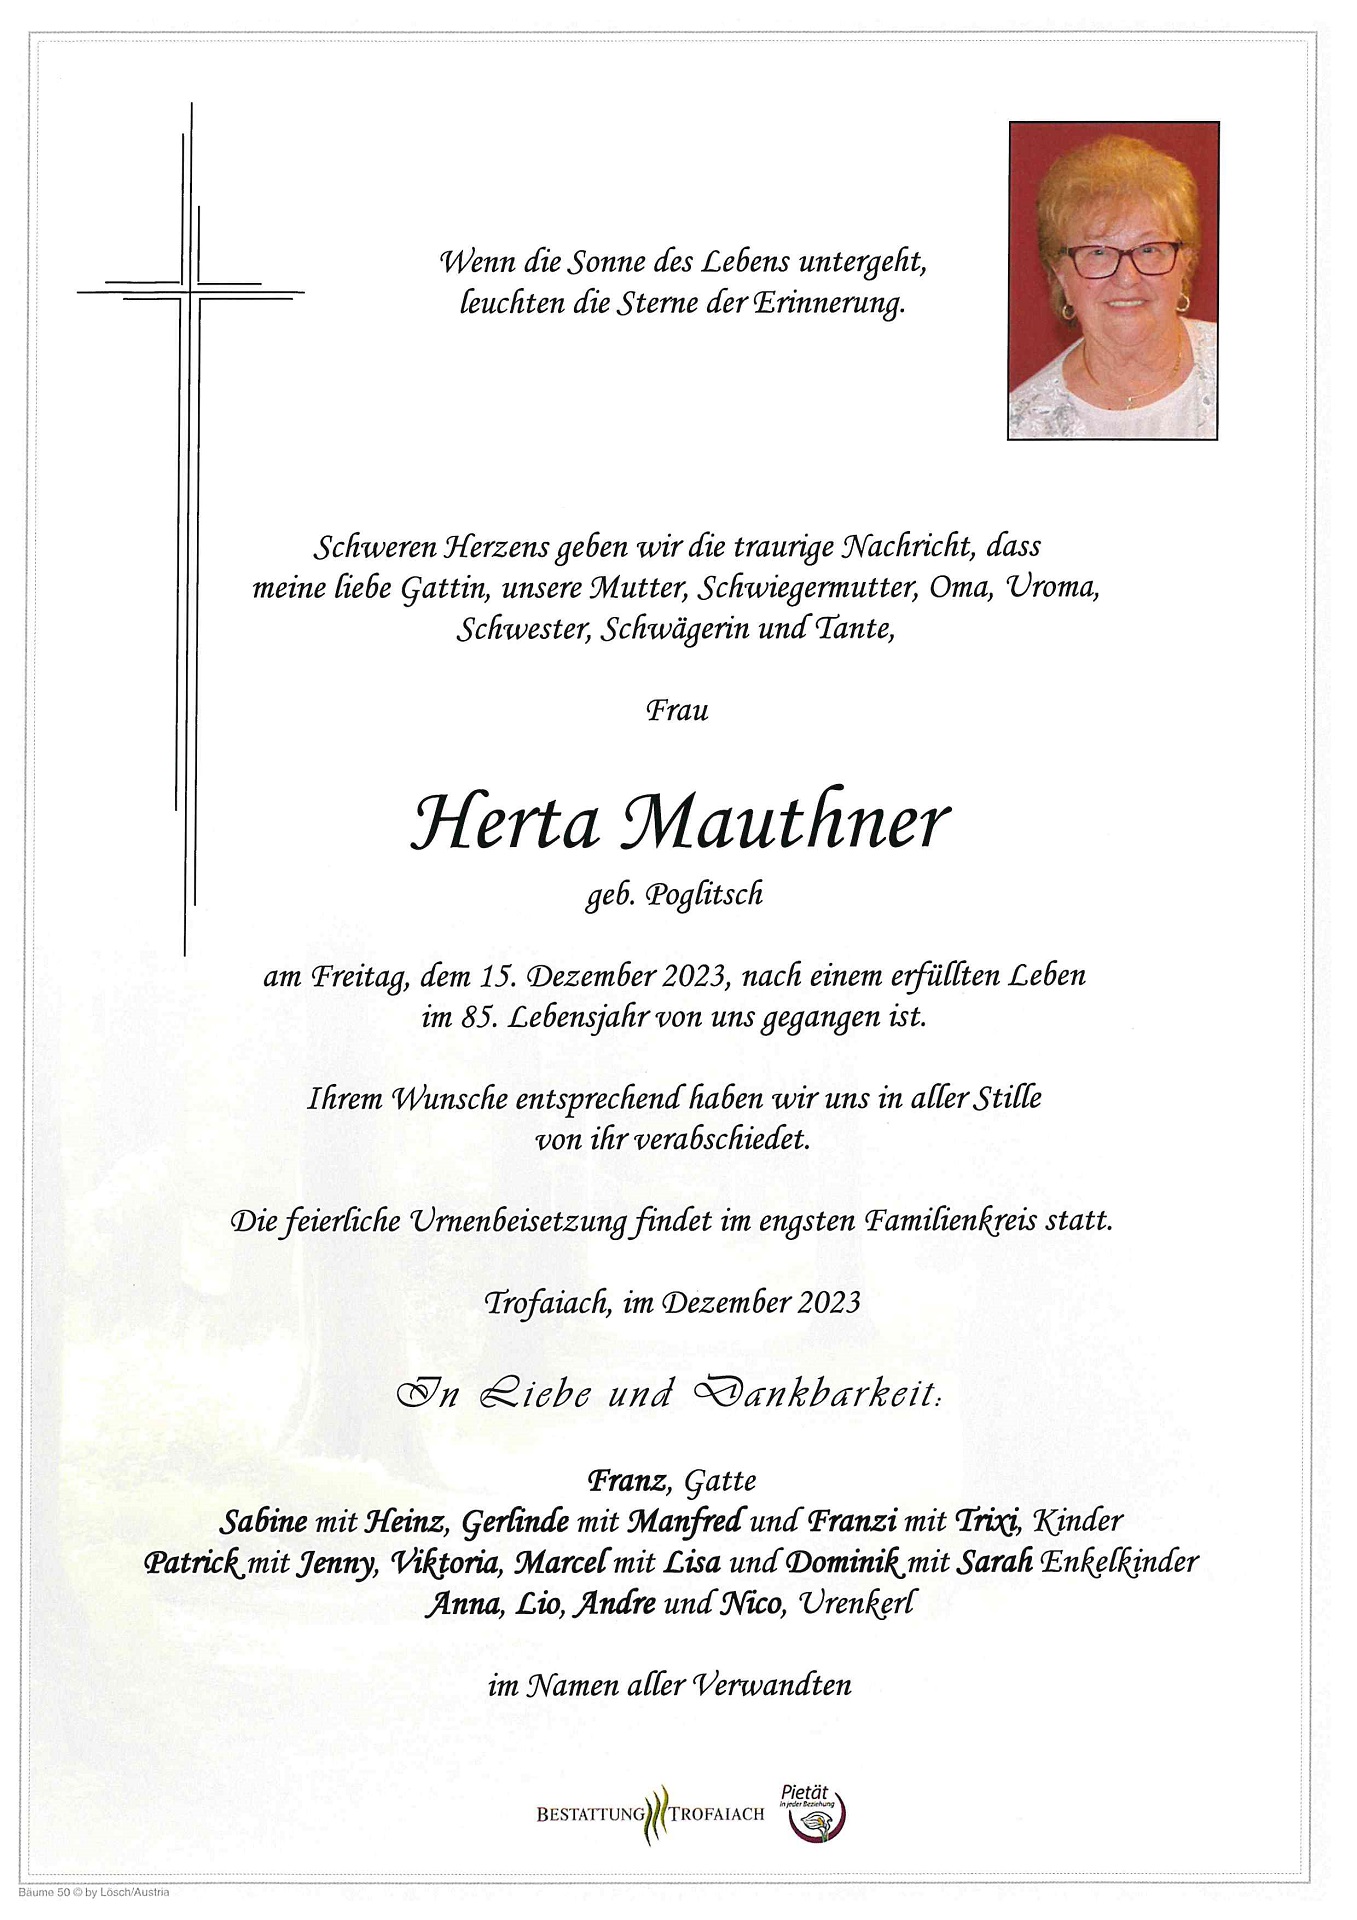 Mauthner Herta